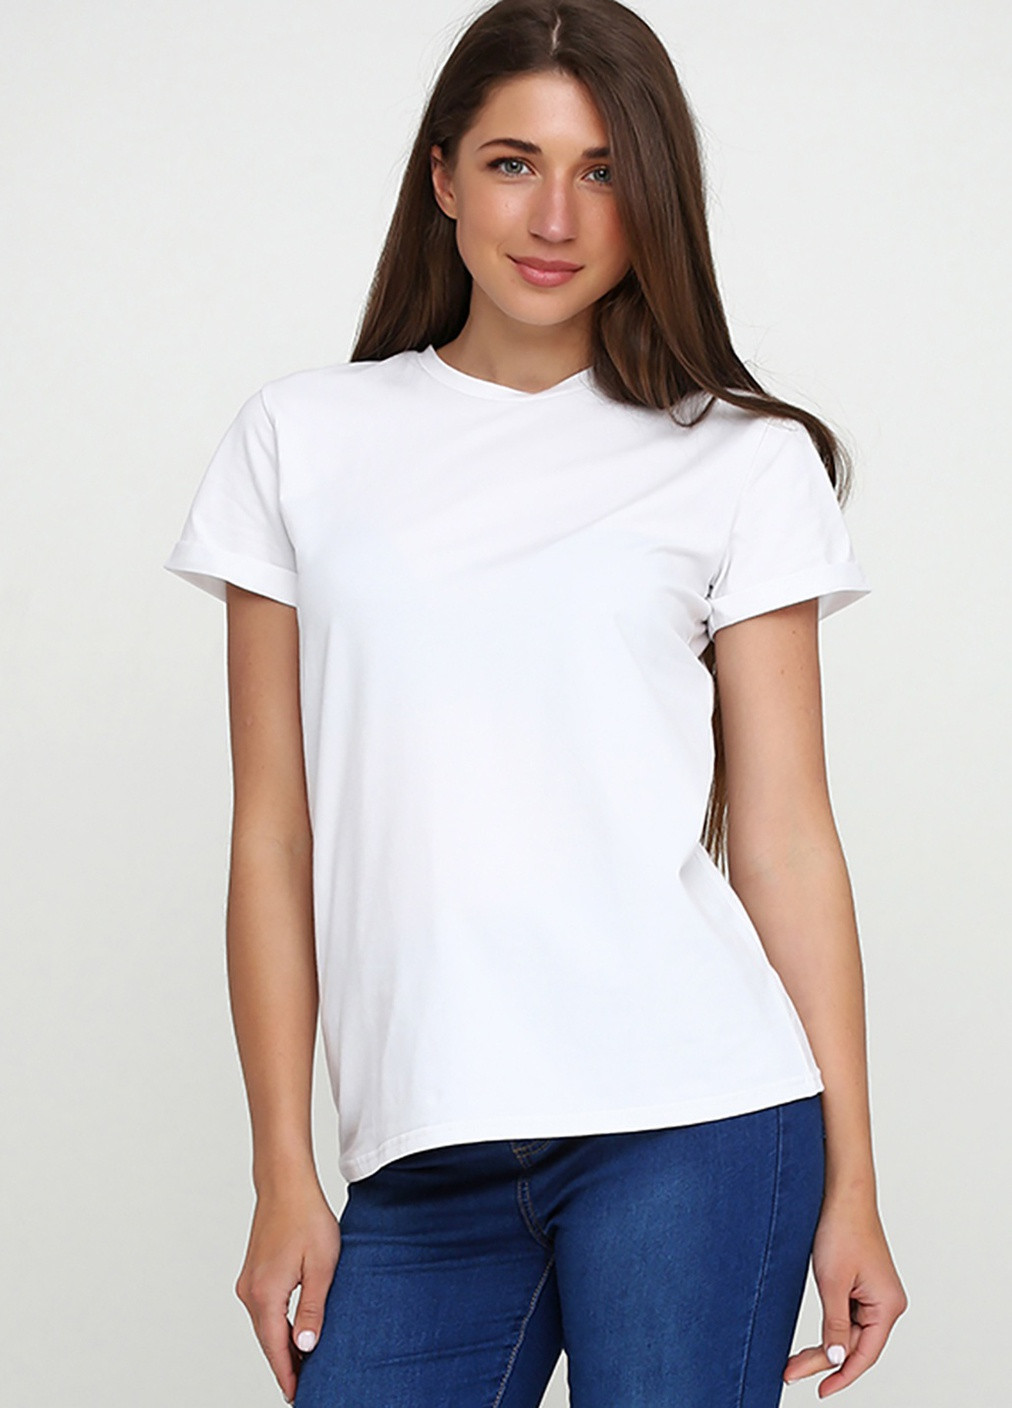 Белая летняя футболка женская ж441-24 белая Malta